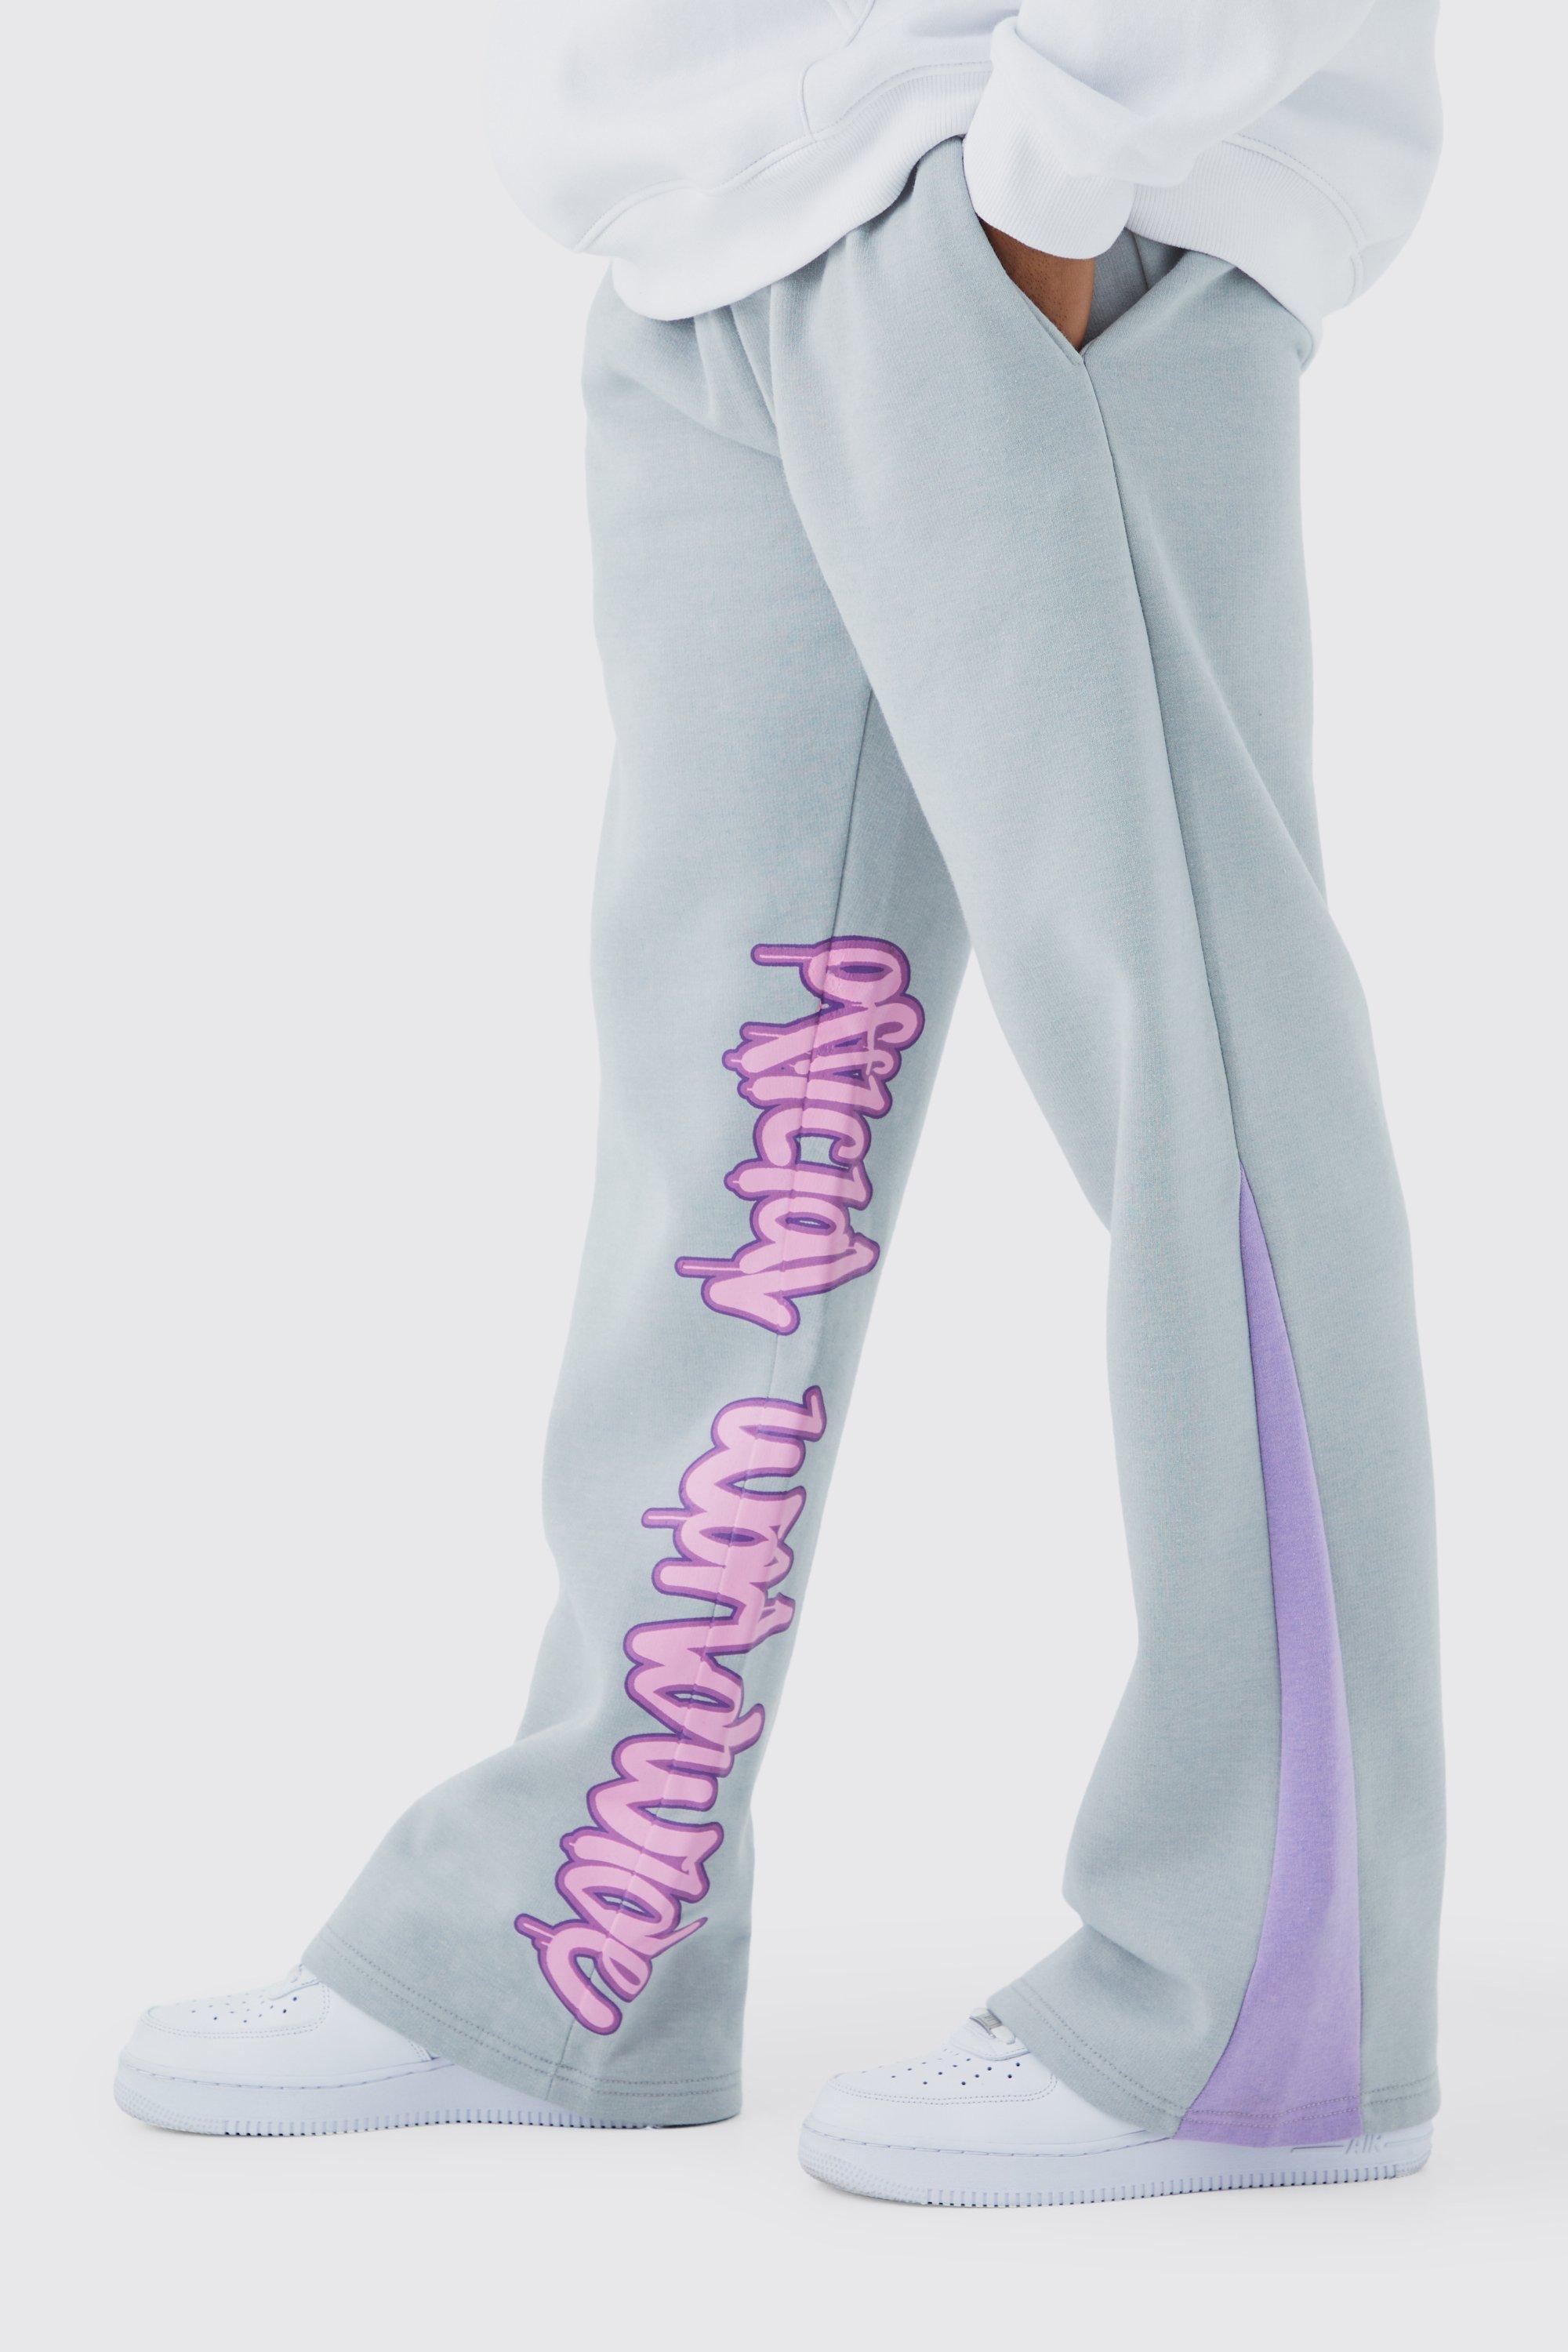 Image of Pantaloni tuta con stampa stile Graffiti, inserti e pannelli, Grigio